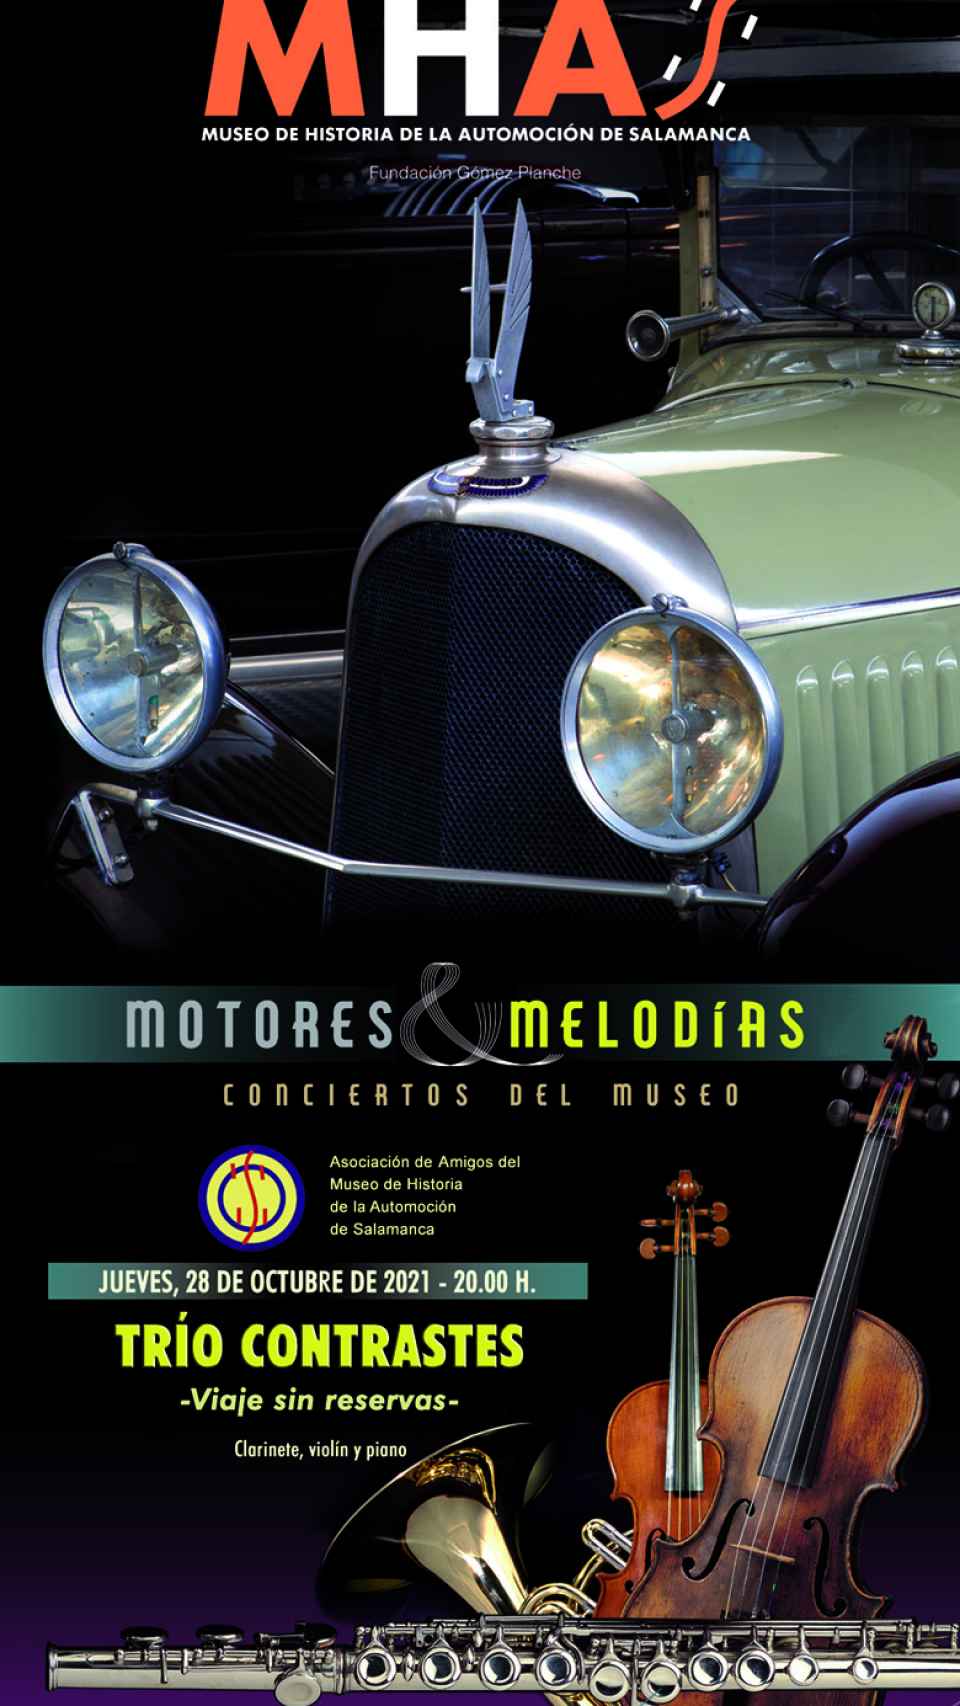 conciertos y melodías museo automocion salamanca